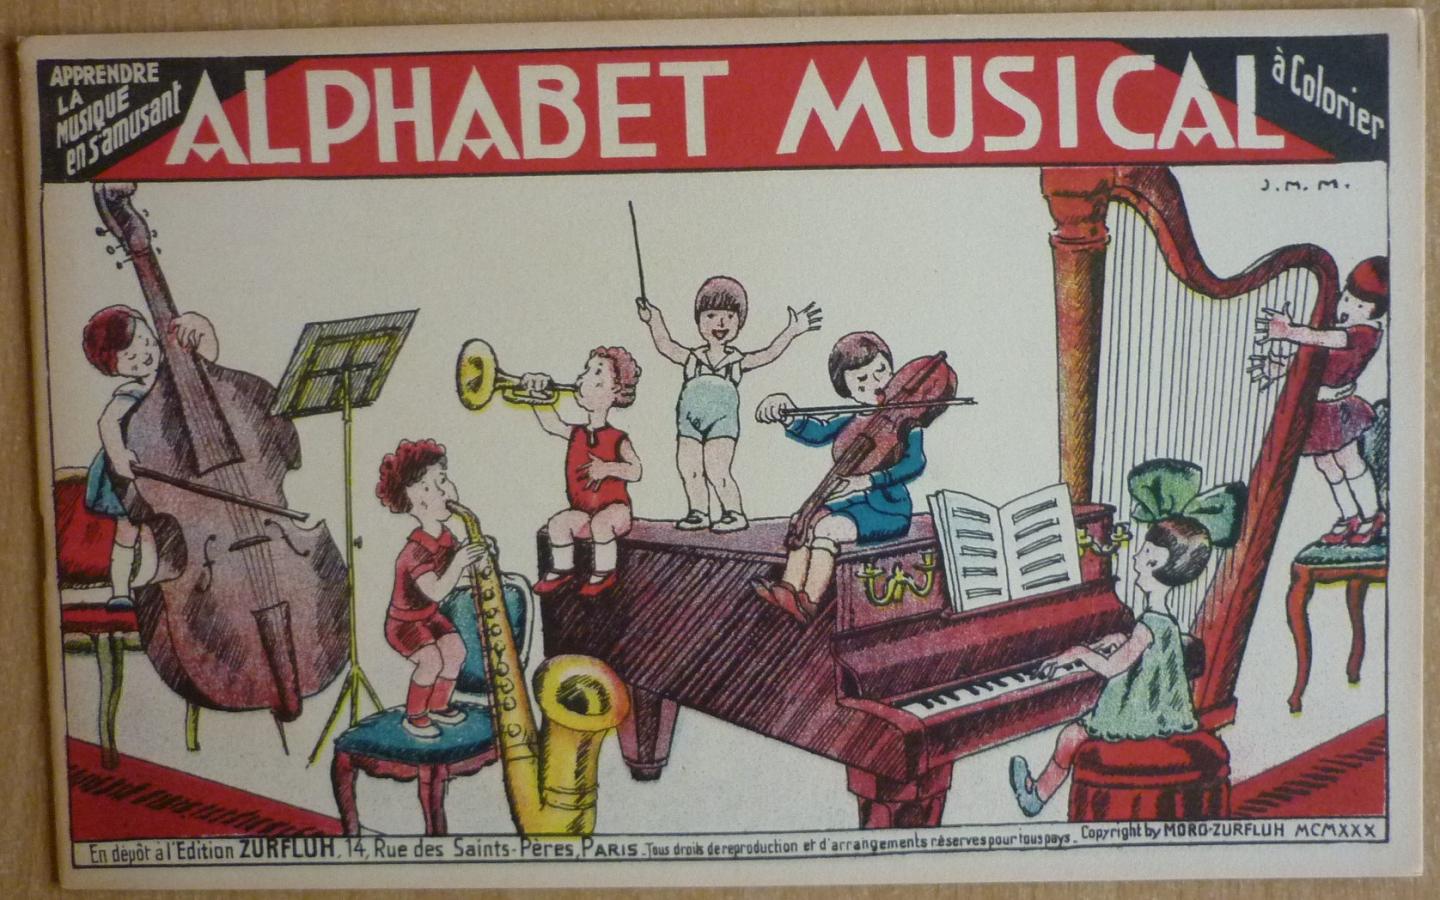  - Alphabet musical  Apprendre la Musique en s'amusant  à colorier